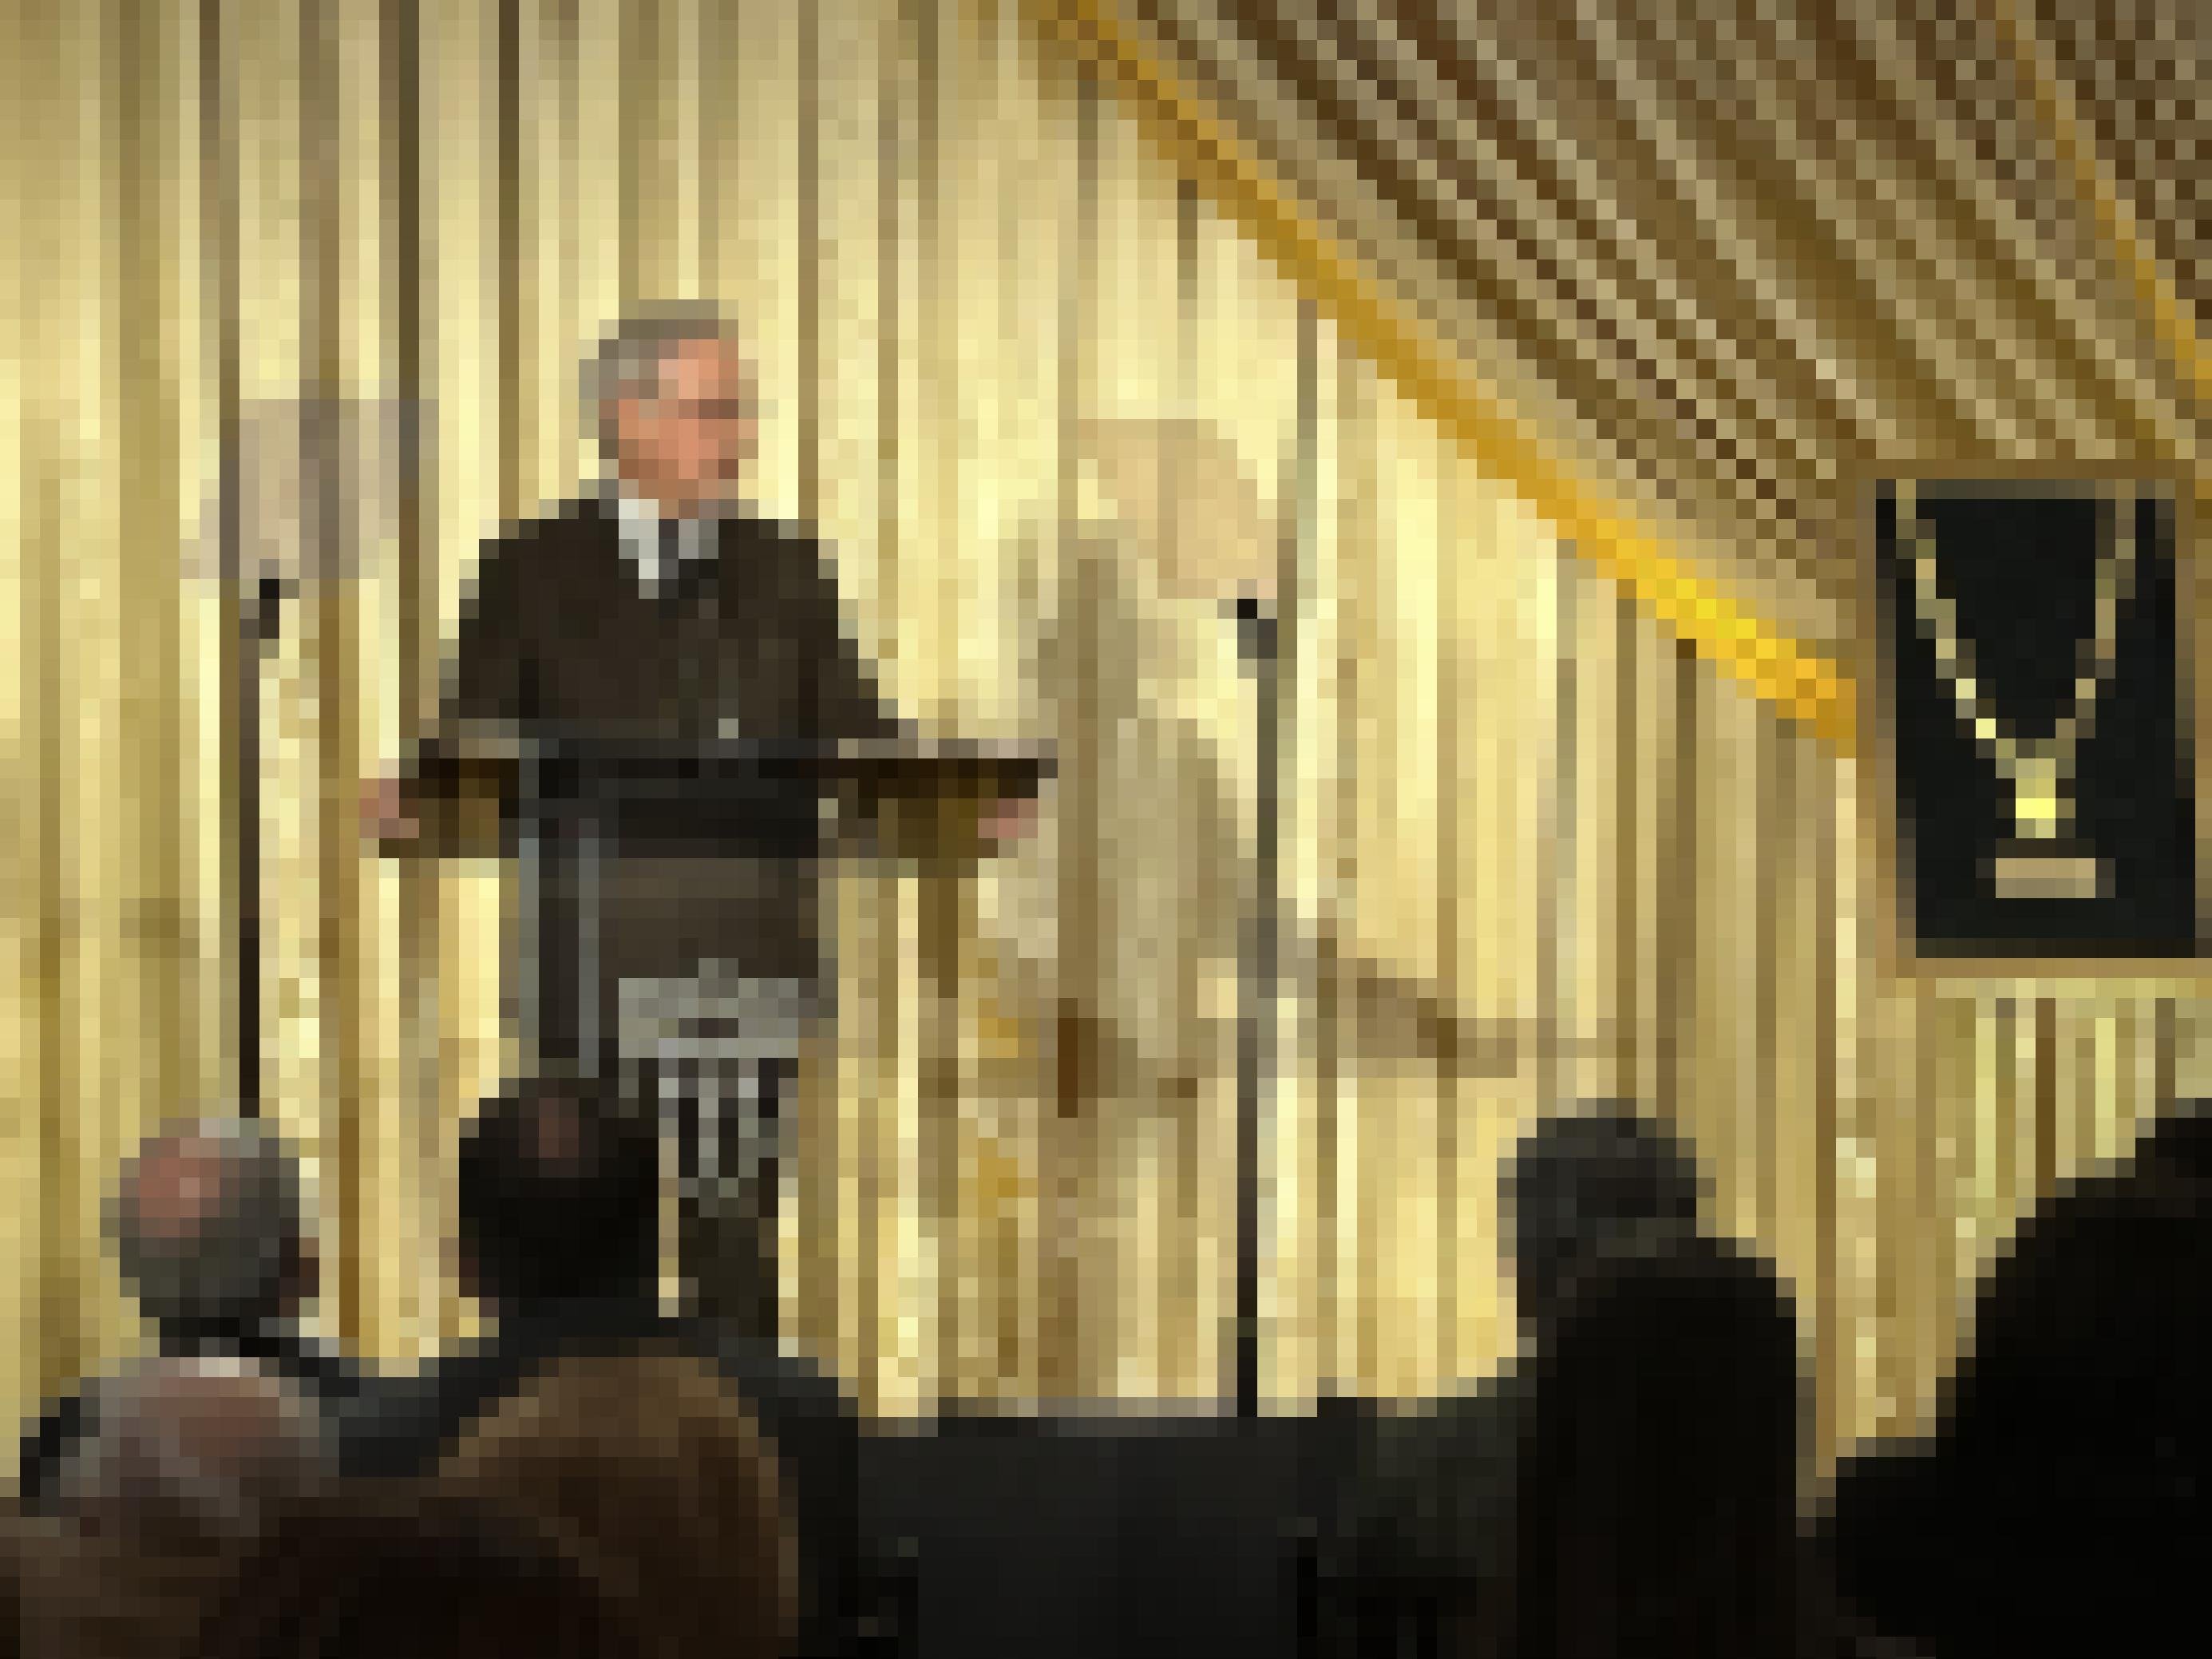 Regisseur Steven Spielberg steht auf einer Bühne vor einem goldenen Vorhang am Rednerpult.